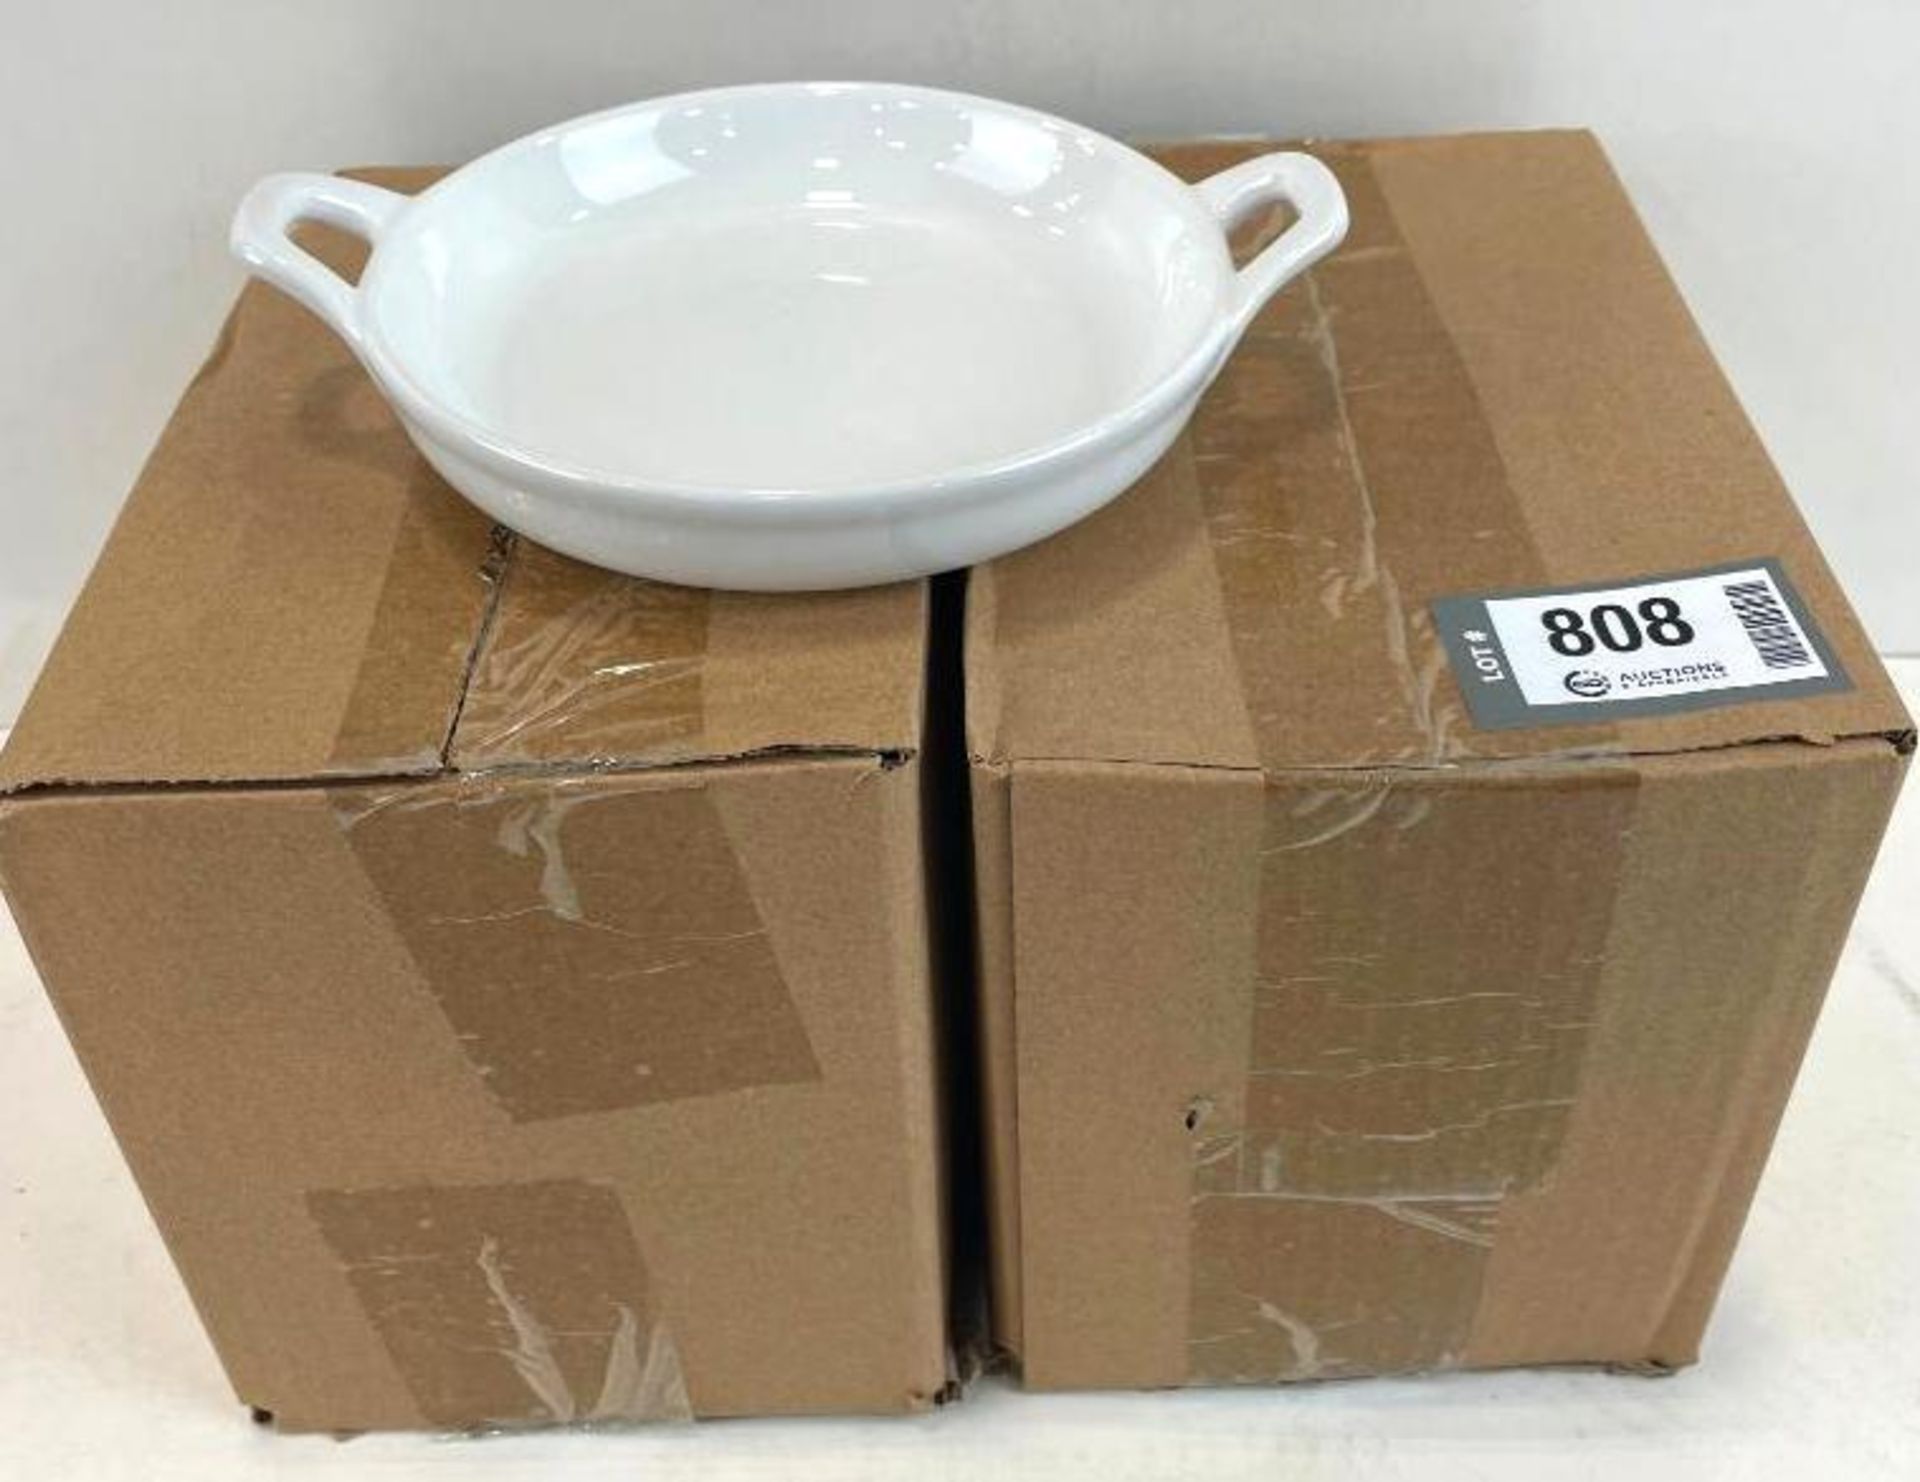 2 BOXES OF ARCOROC FJ779 CASSEROLE DISHES - 6 PER BOX - NEW